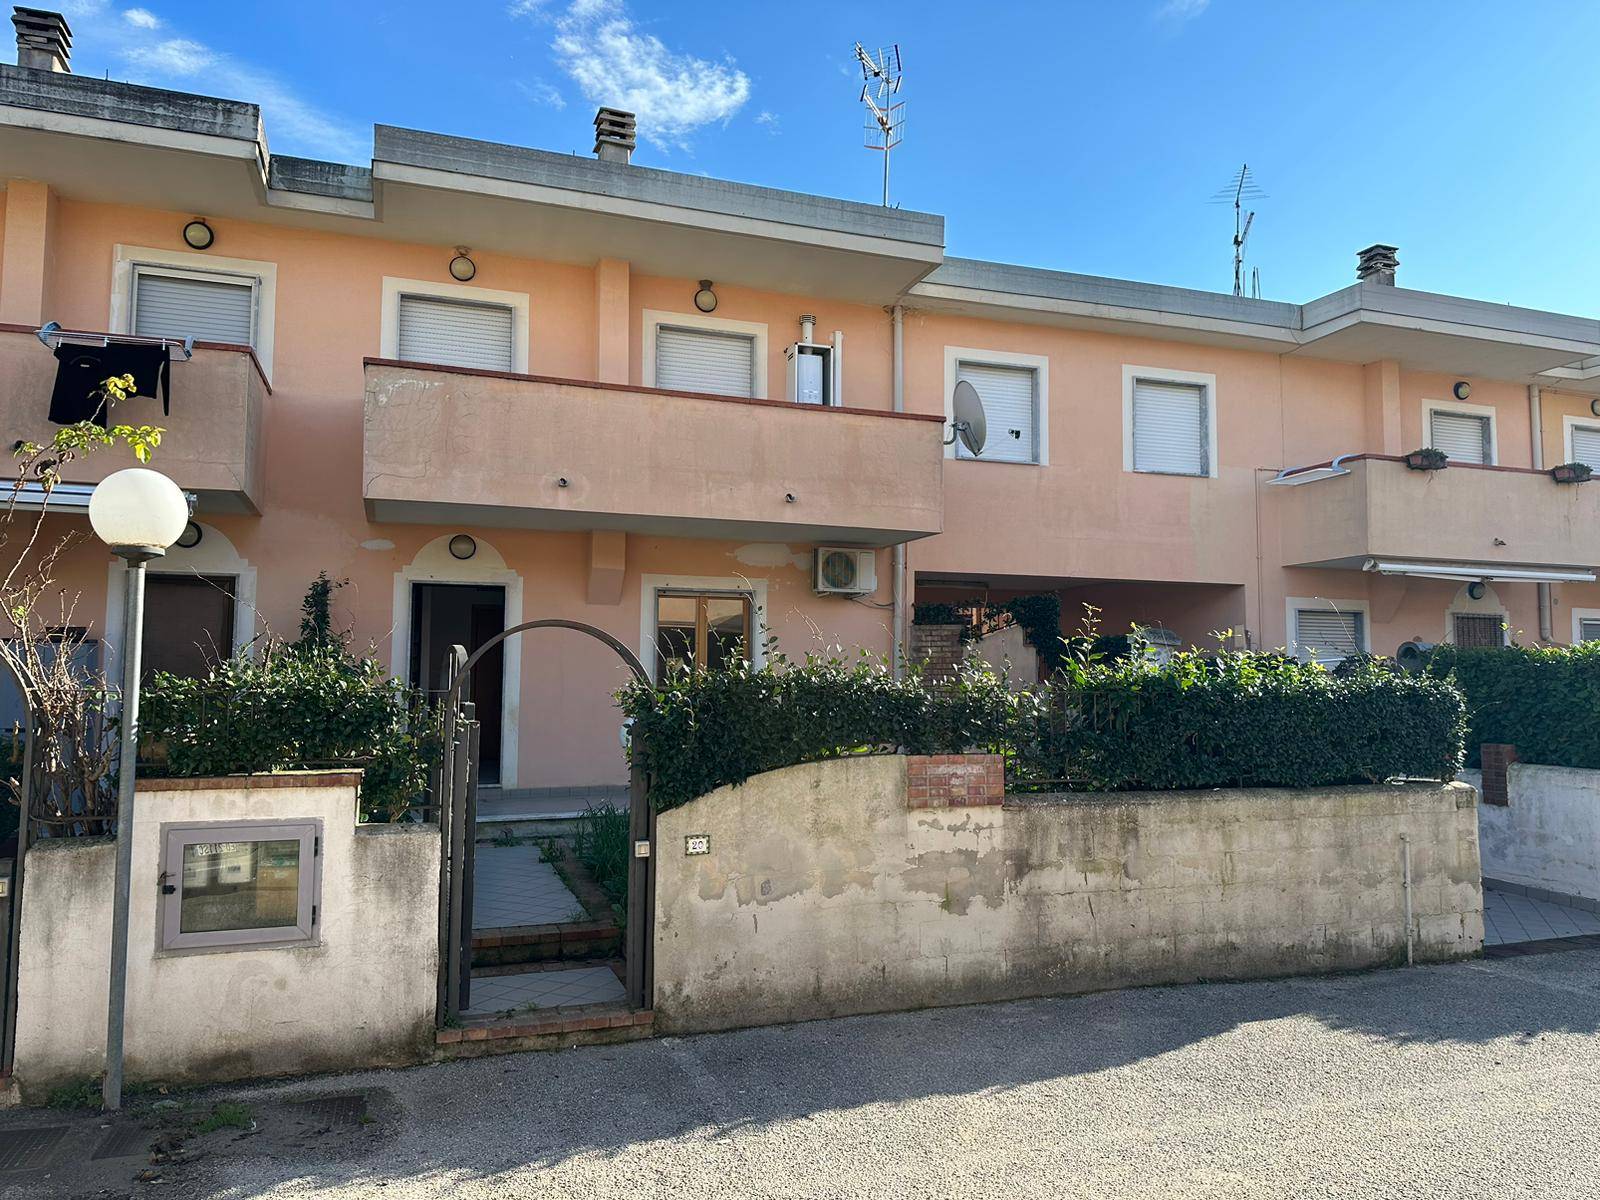 Villa a Schiera in vendita a Agropoli, 4 locali, prezzo € 120.000 | CambioCasa.it